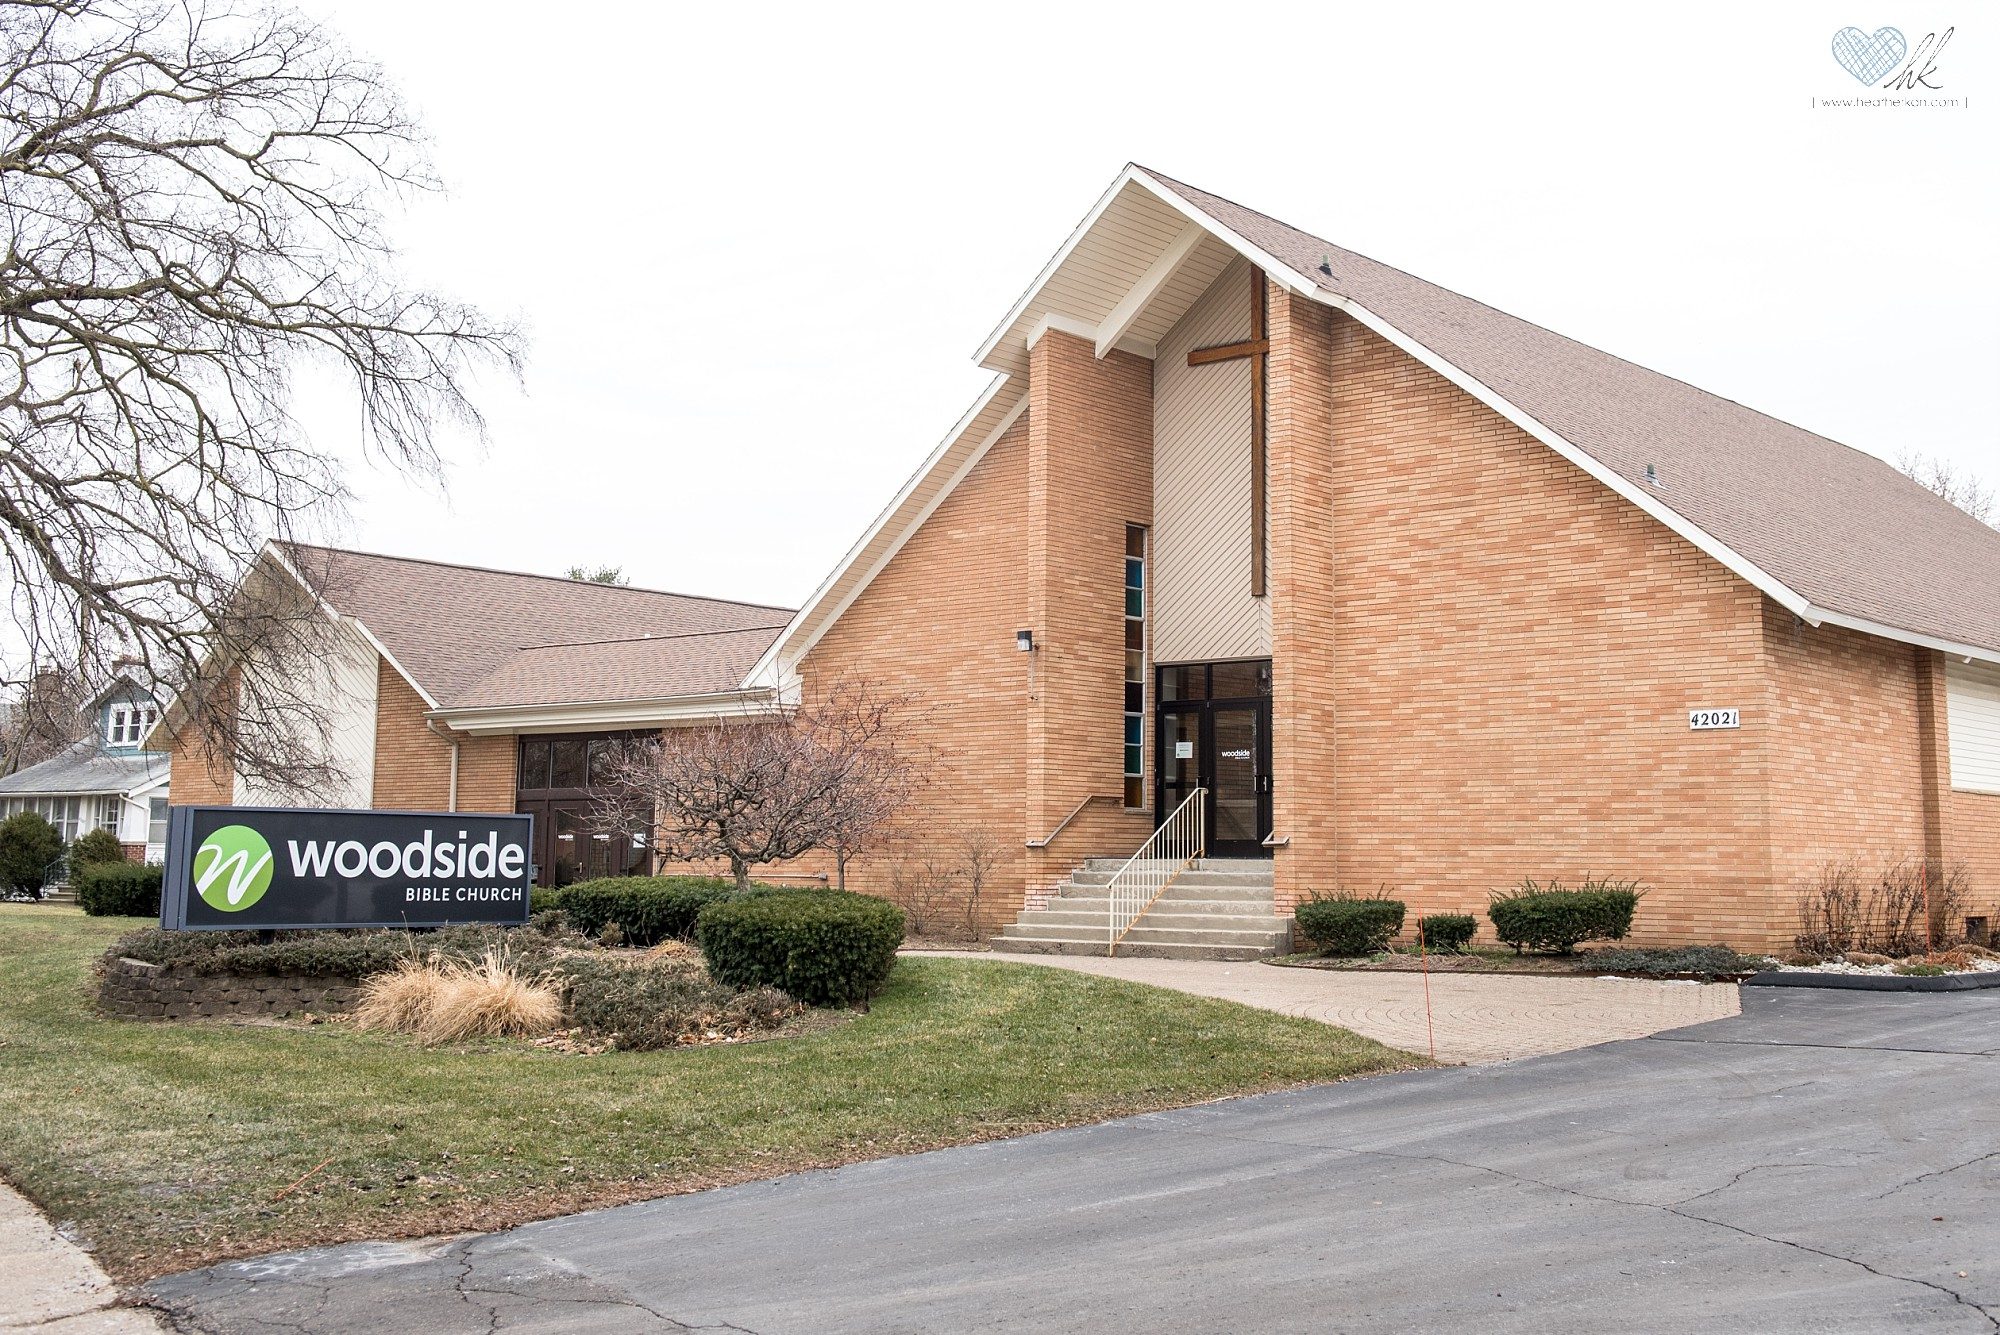 Woodside Bible Church, Plymouth Michigan